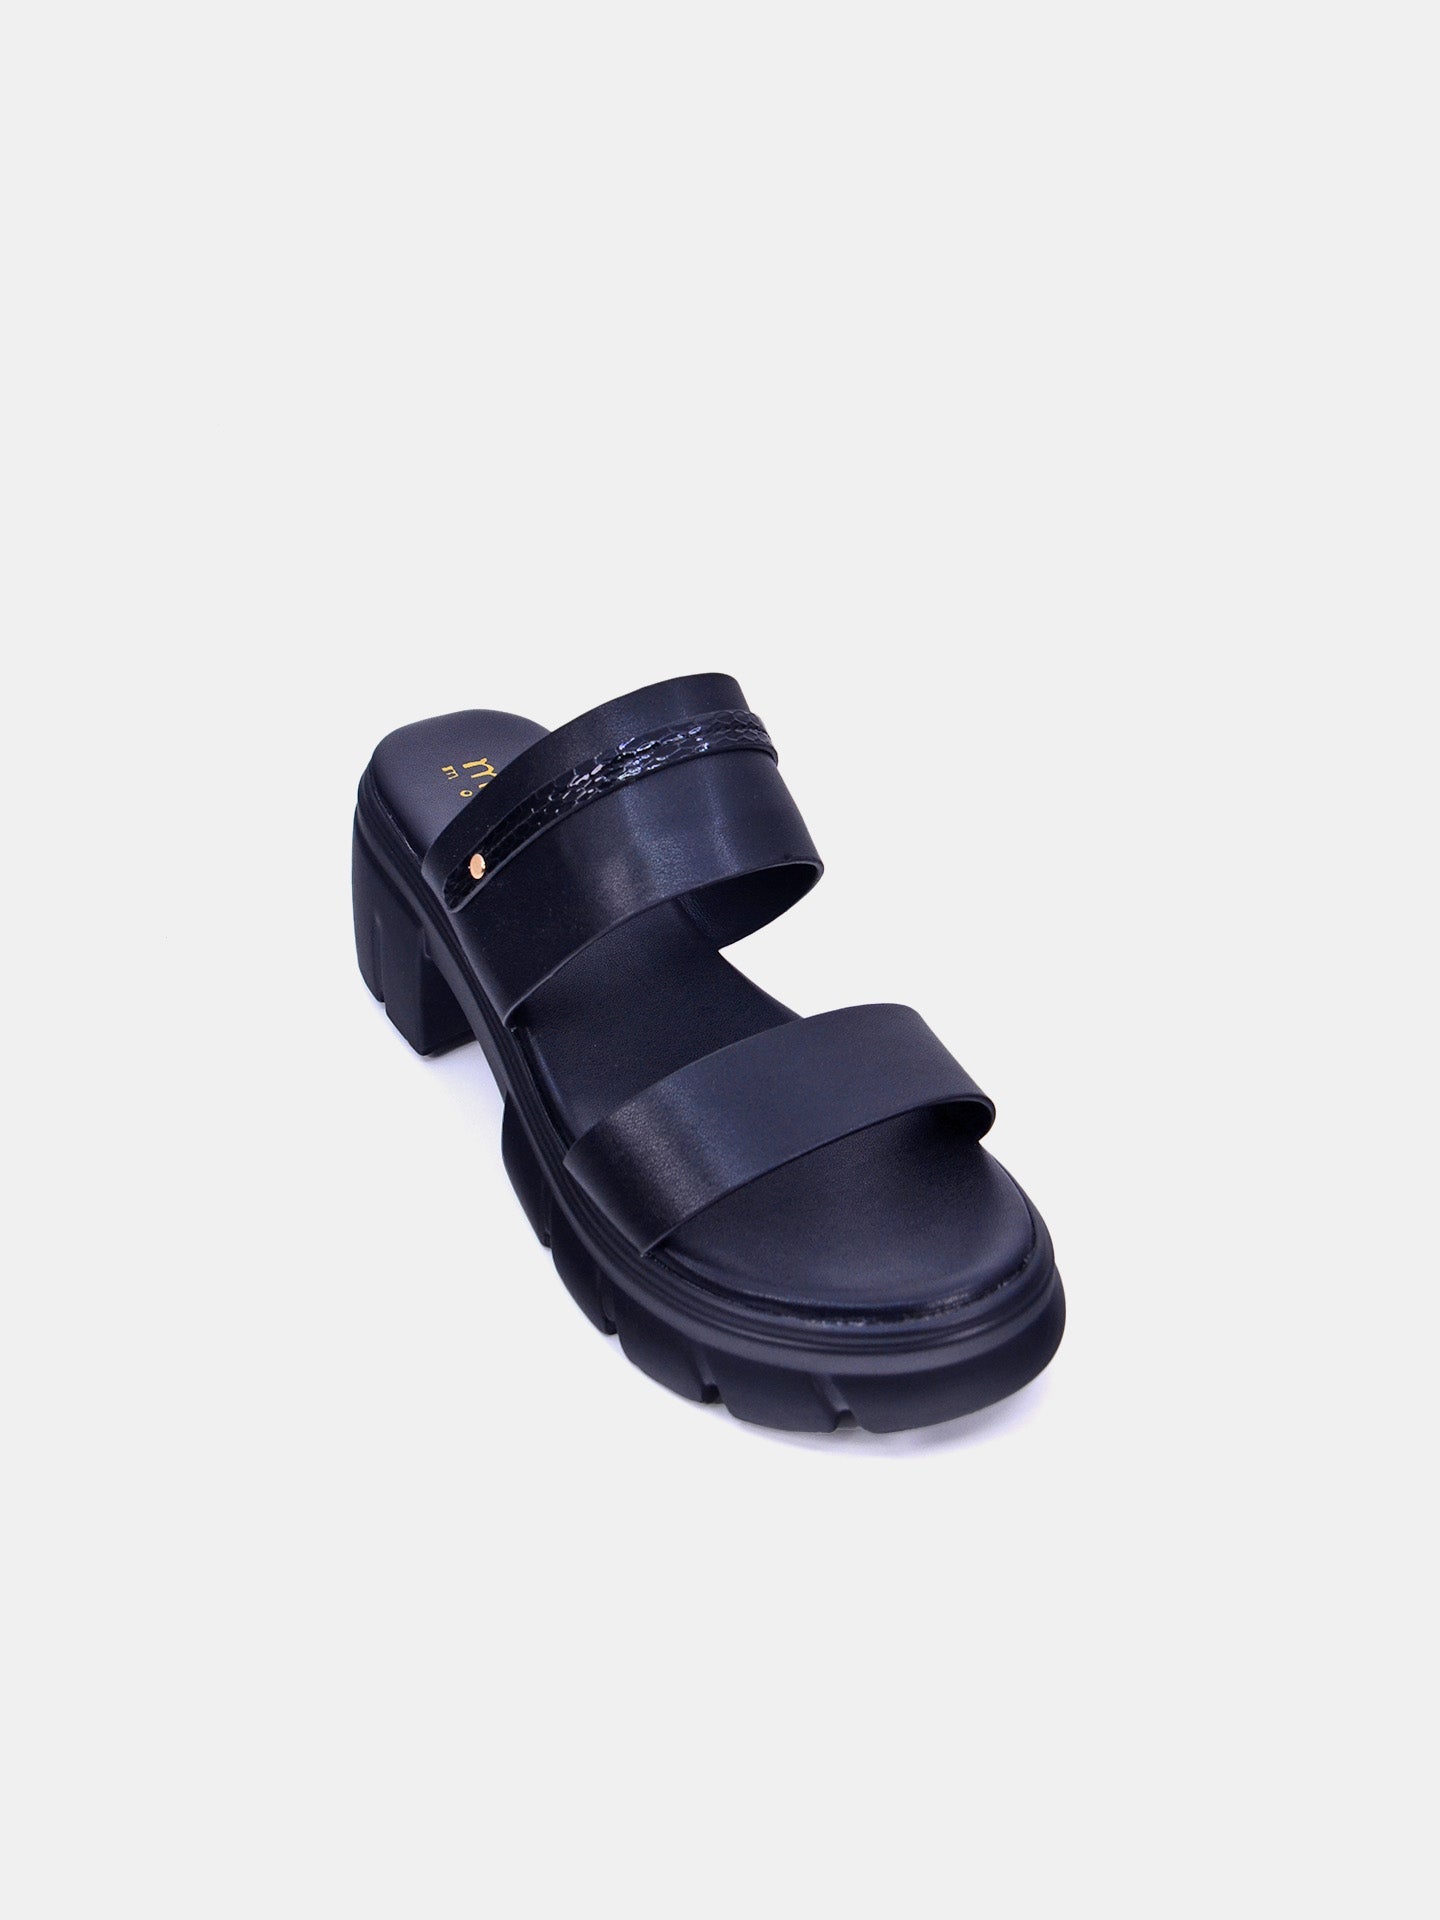 Michelle Morgan 214RJ635 Women's Sandals #color_Black